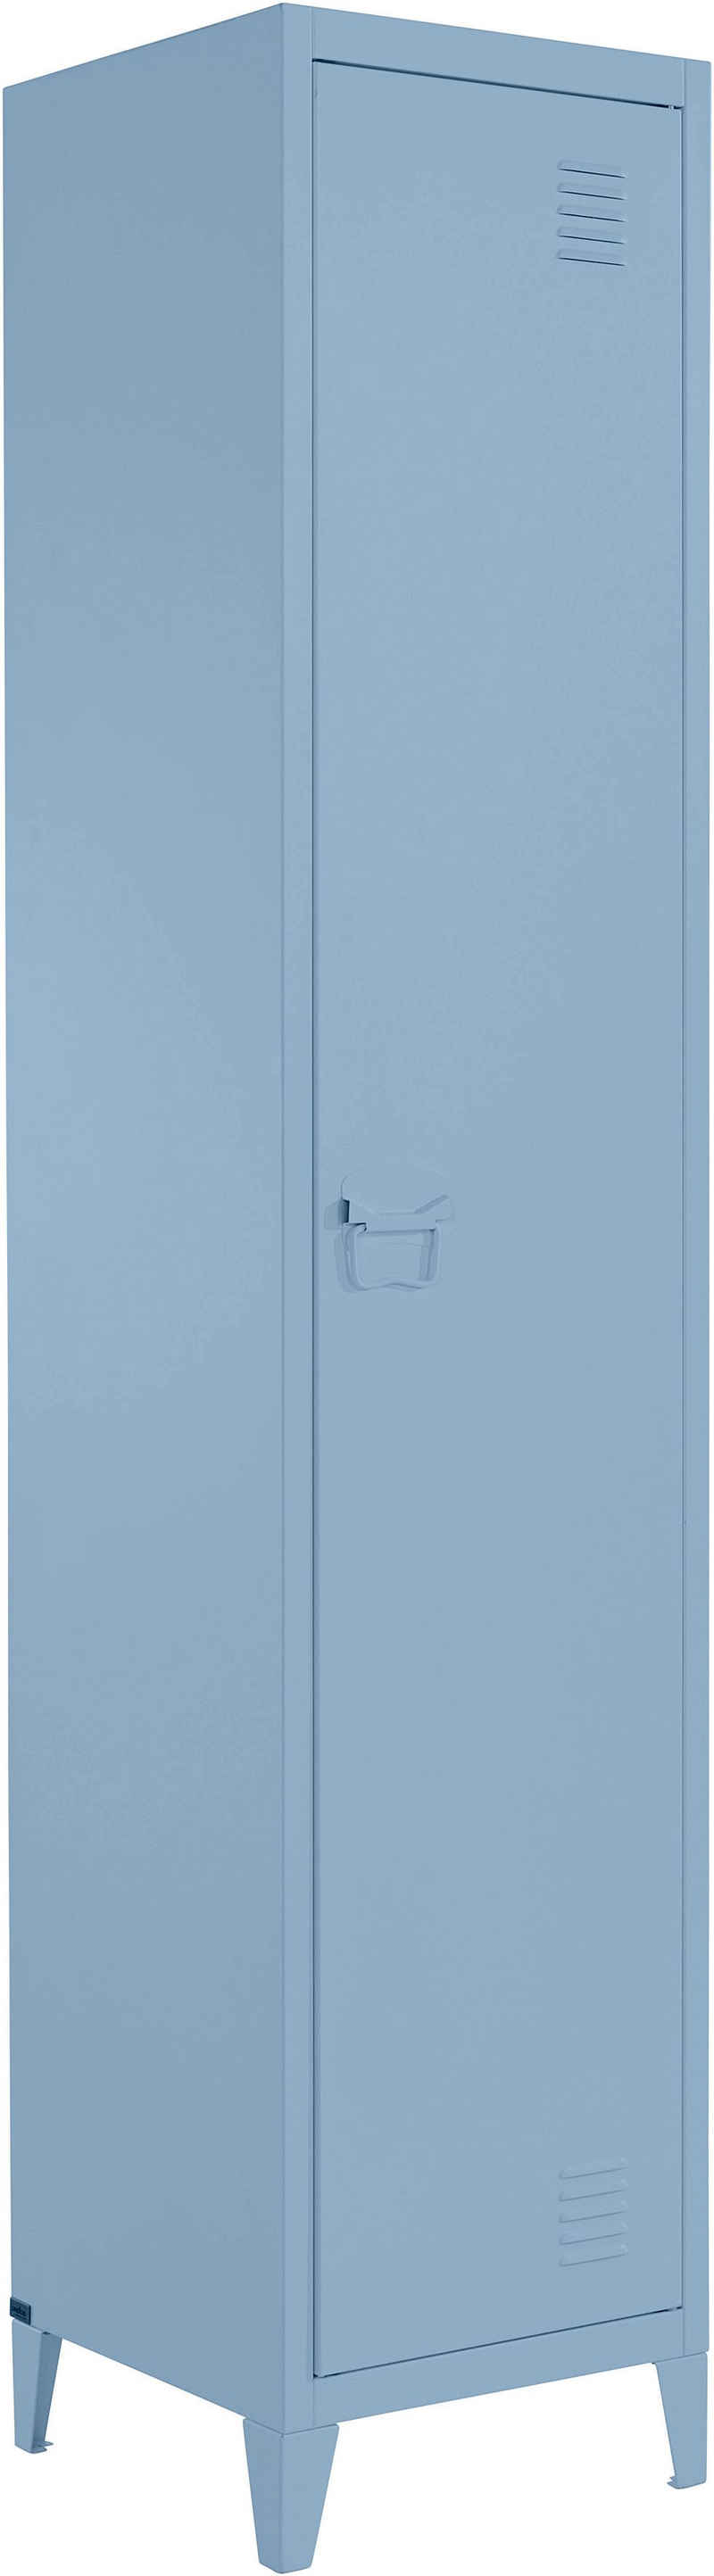 andas Hochschrank »Jensjorg« Hochschrank aus pflegeleitem Metall in minimalistishes Design, mit 2 x Einlegeböden hinter der Tür, in verschiedenen Farbvarianten erhältlich, Höhe 180 cm